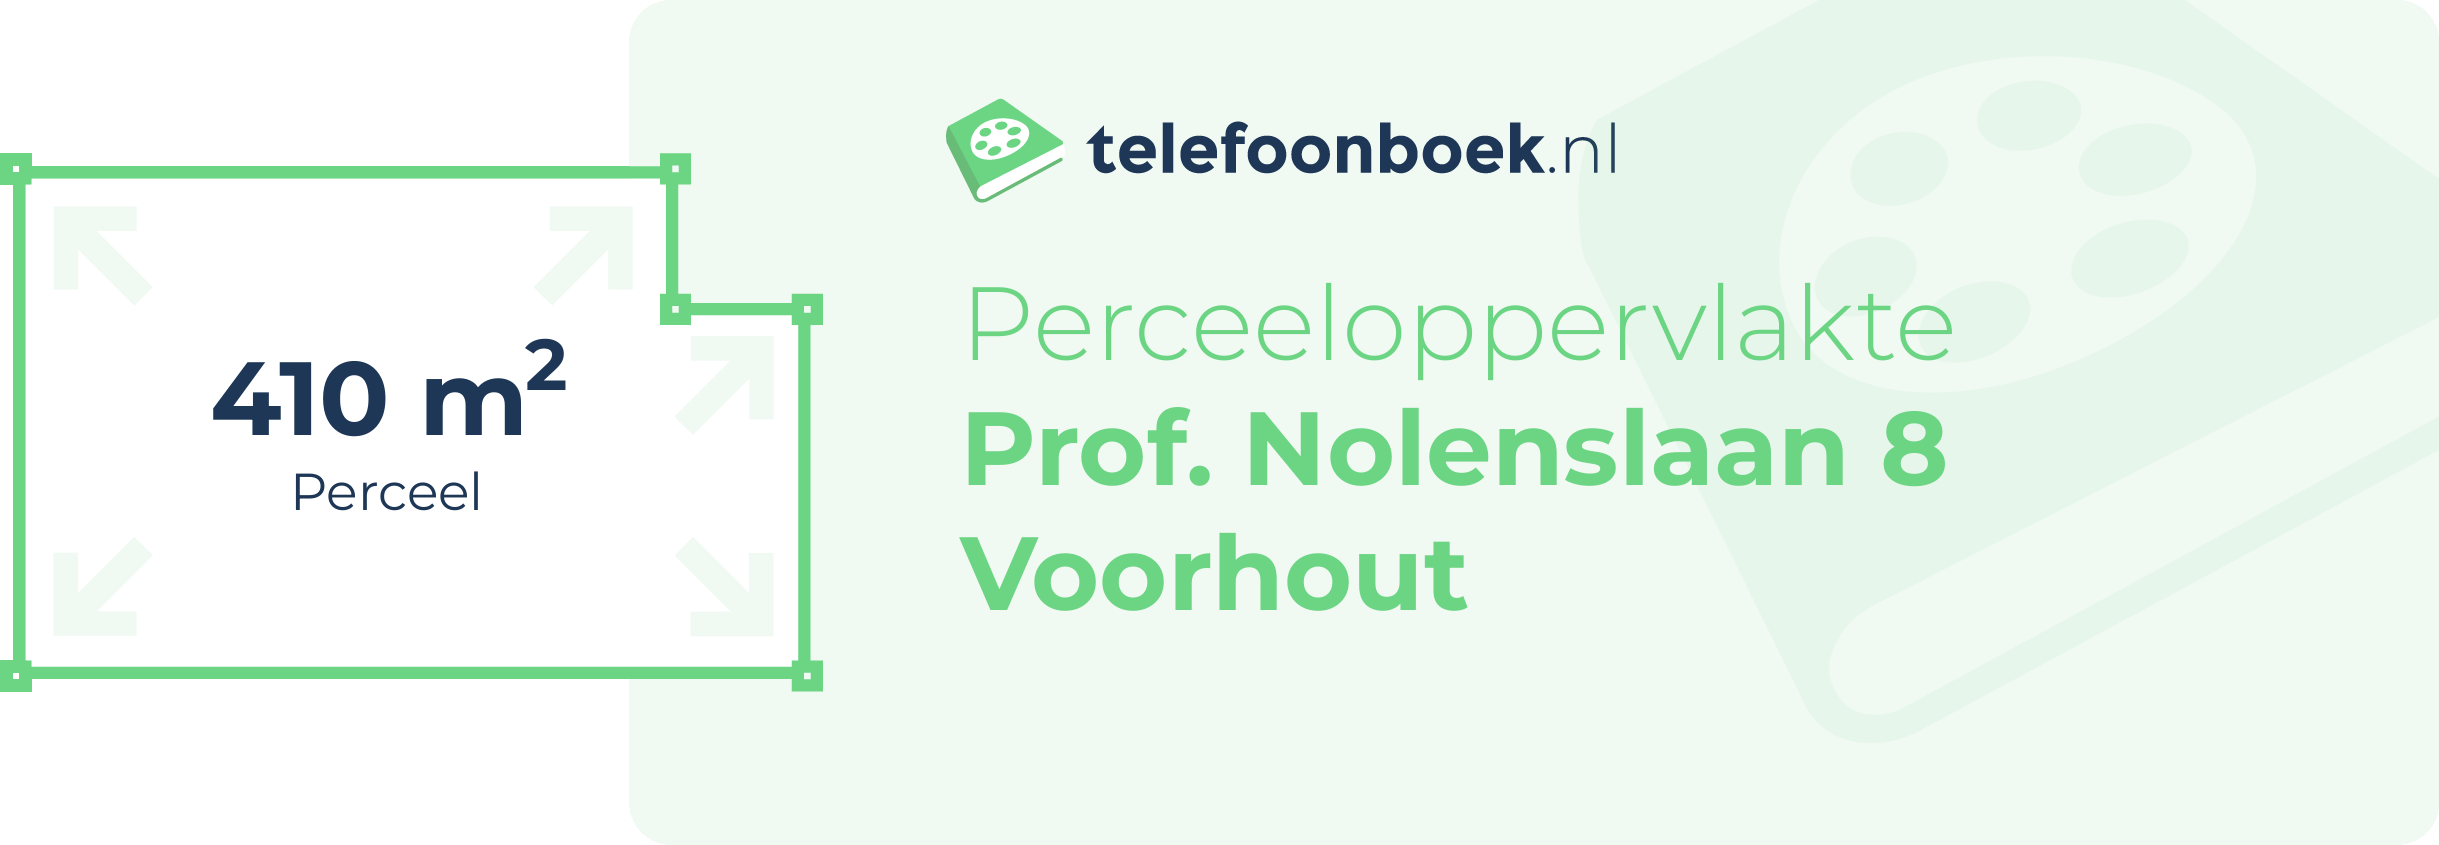 Perceeloppervlakte Prof. Nolenslaan 8 Voorhout